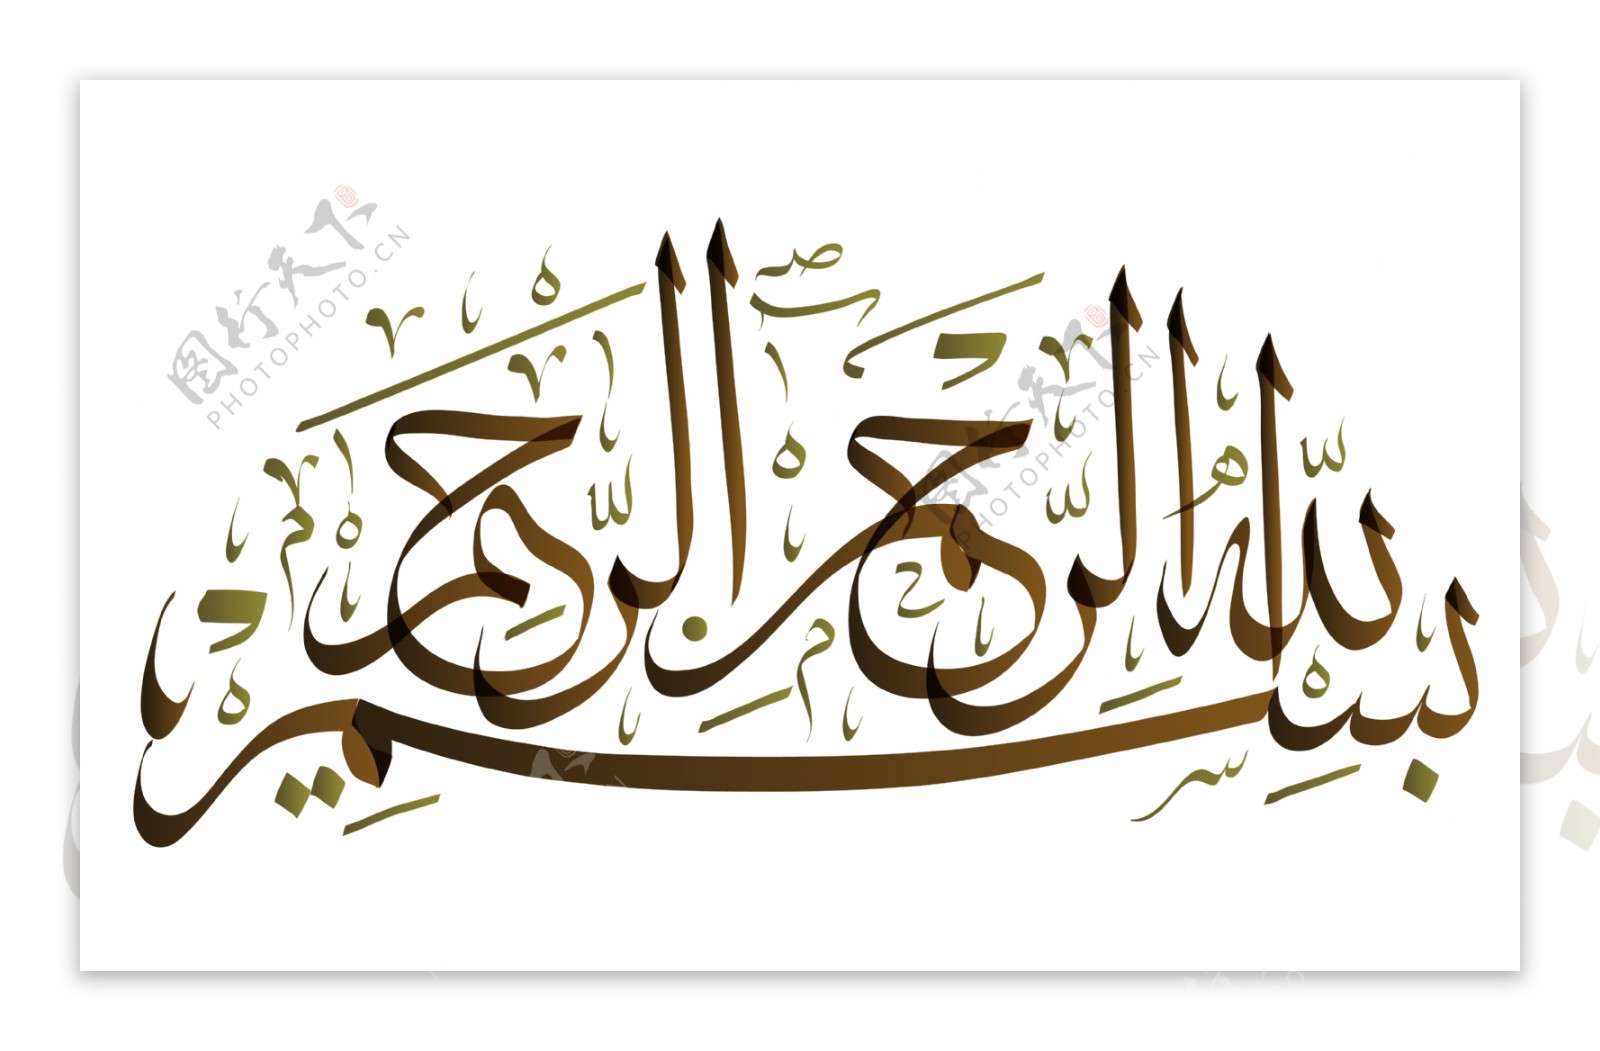 阿拉伯文字图案